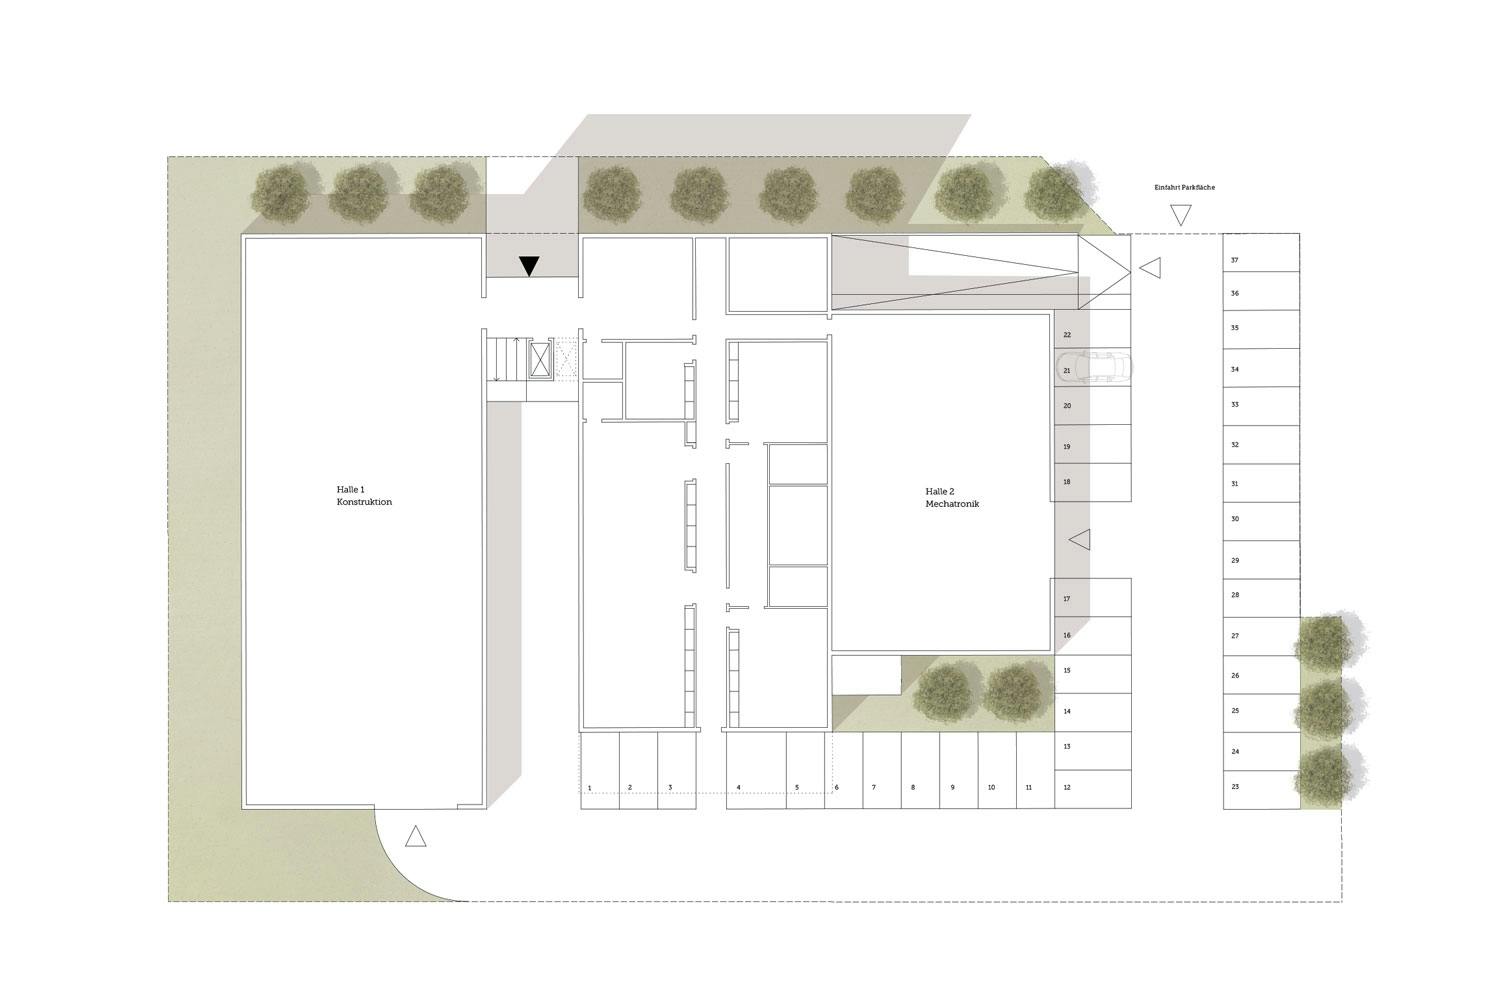 Studie - Grundriss Erdgeschoss mit neuem Freiflächenkonzept